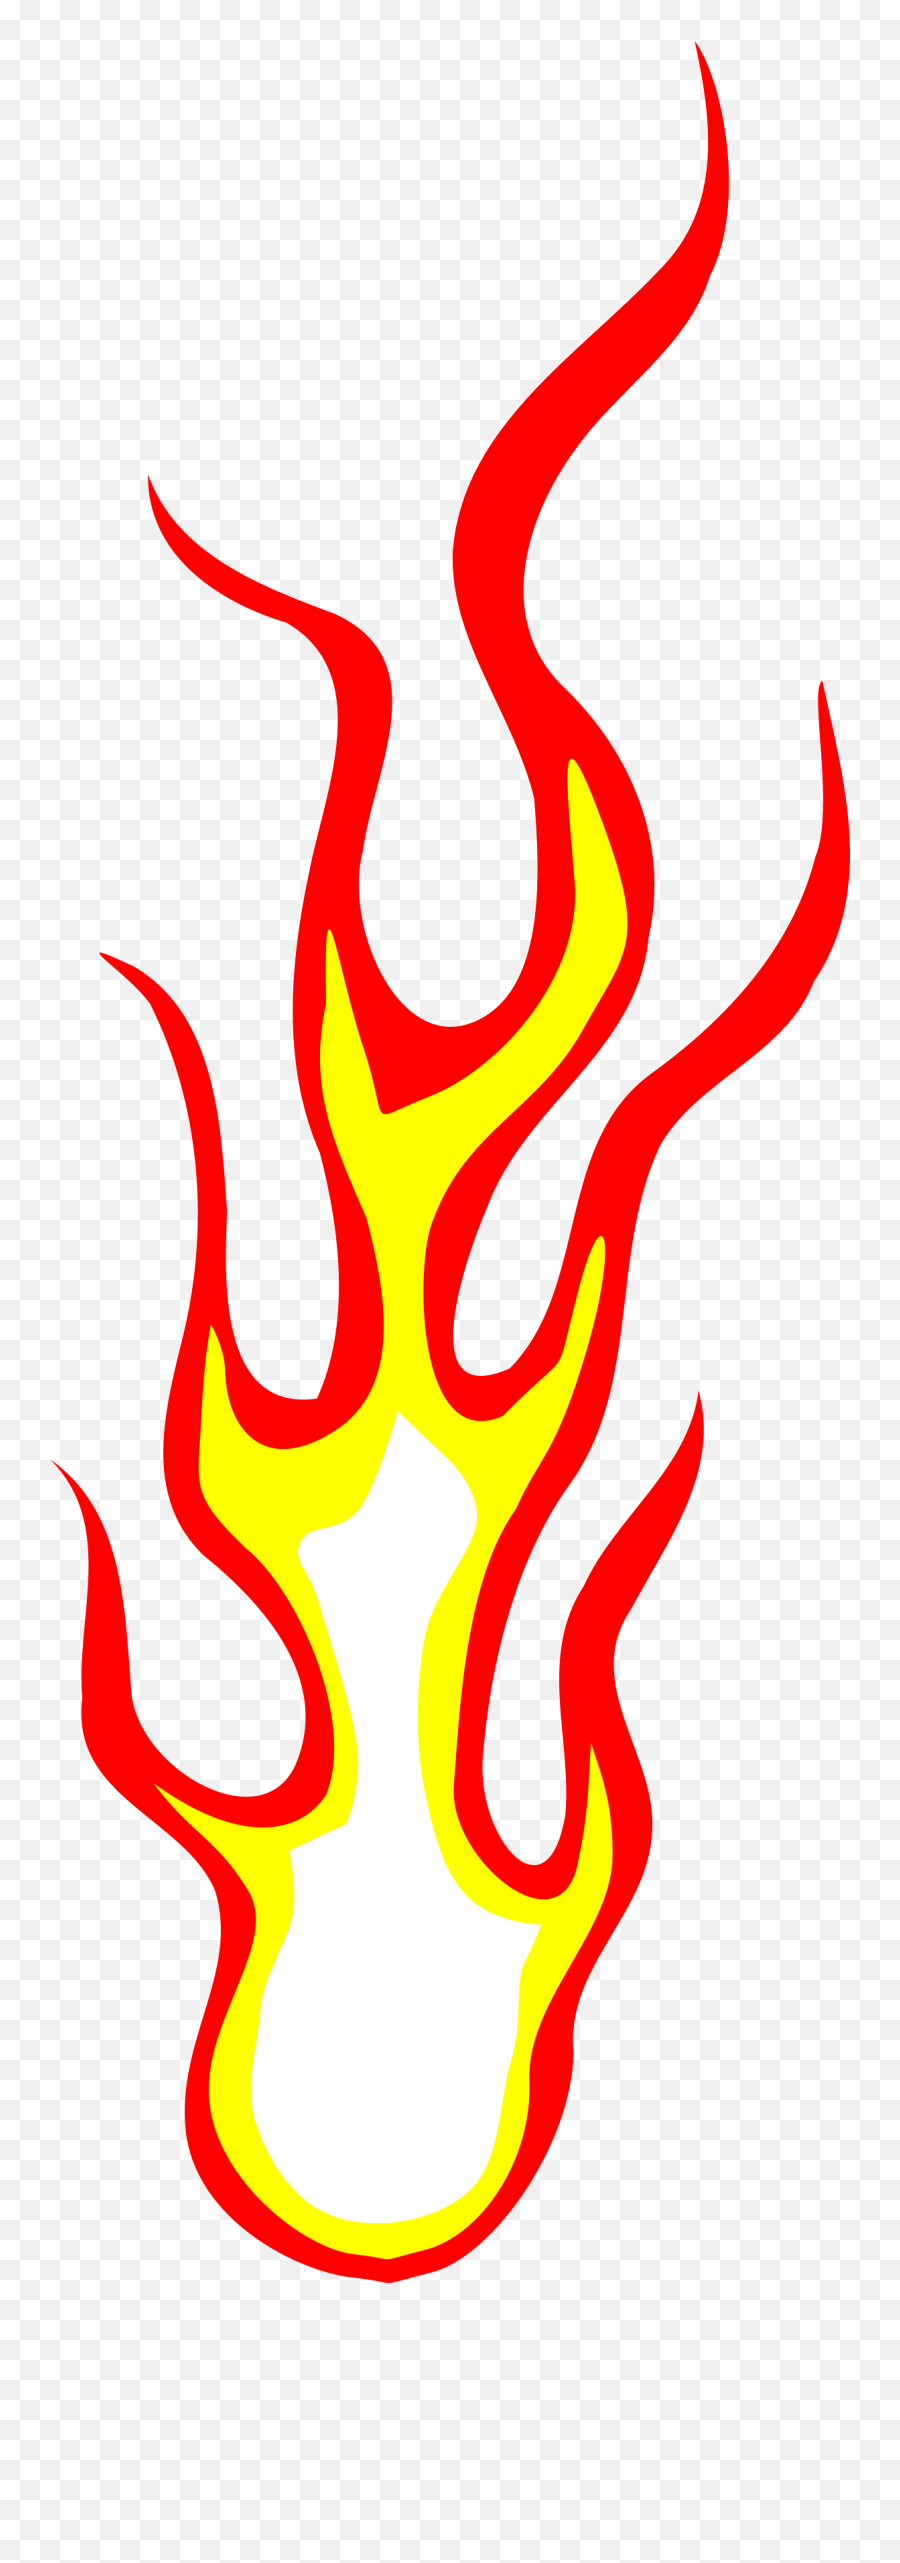 Emoji Fire Png - Fire Flame Clipart Transparent Azpng Flame Transparent Background Clipart Fire Breath,Flame Emoji